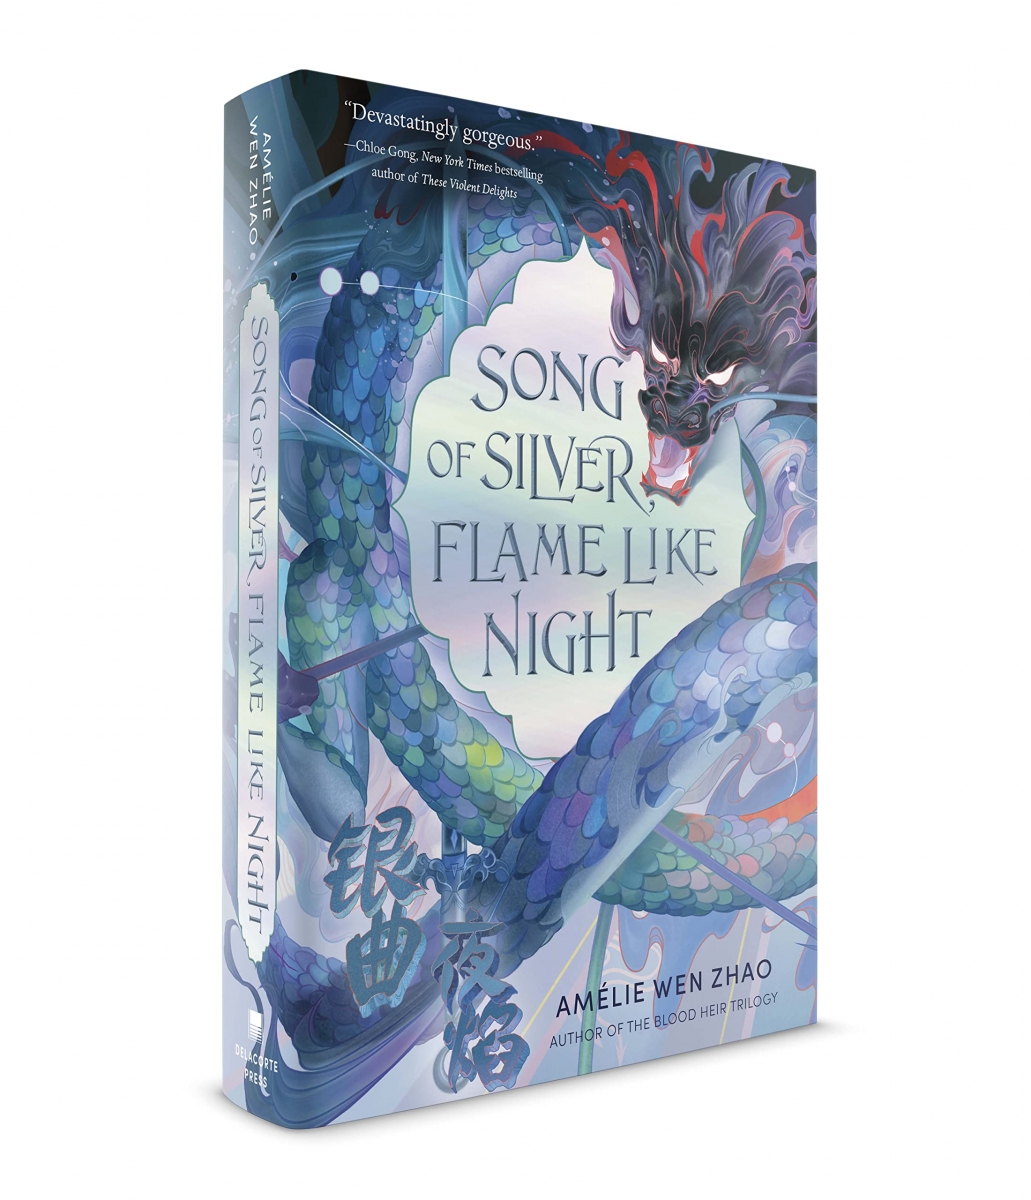  کتاب Song of Silver Flame Like Night by Amélie Wen Zhao